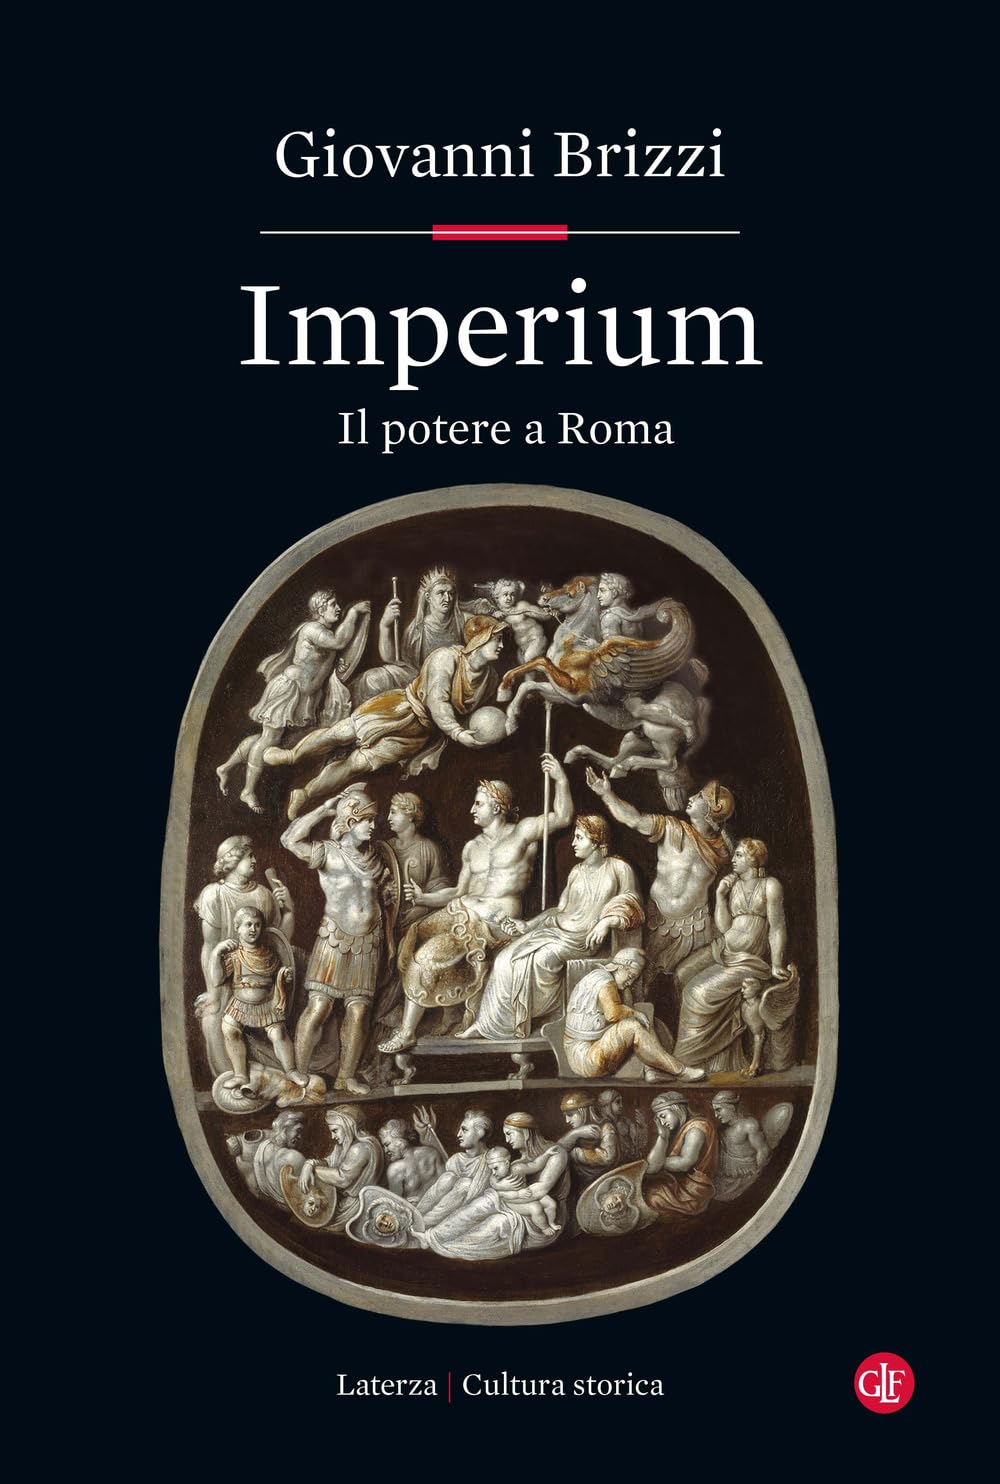 Giovanni Brizzi – Imperium. Il potere a Roma